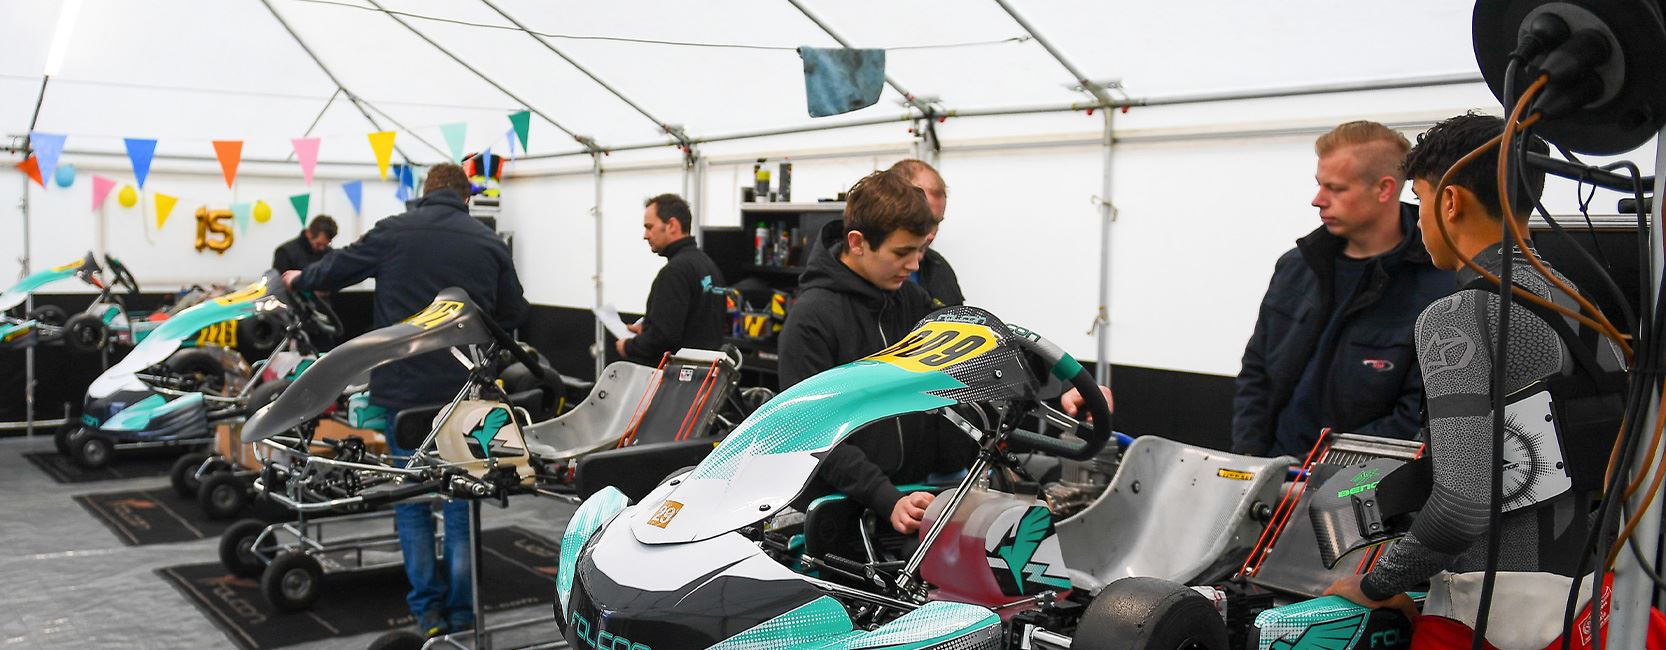 about-peter-de-bruijn-kart-racing-header